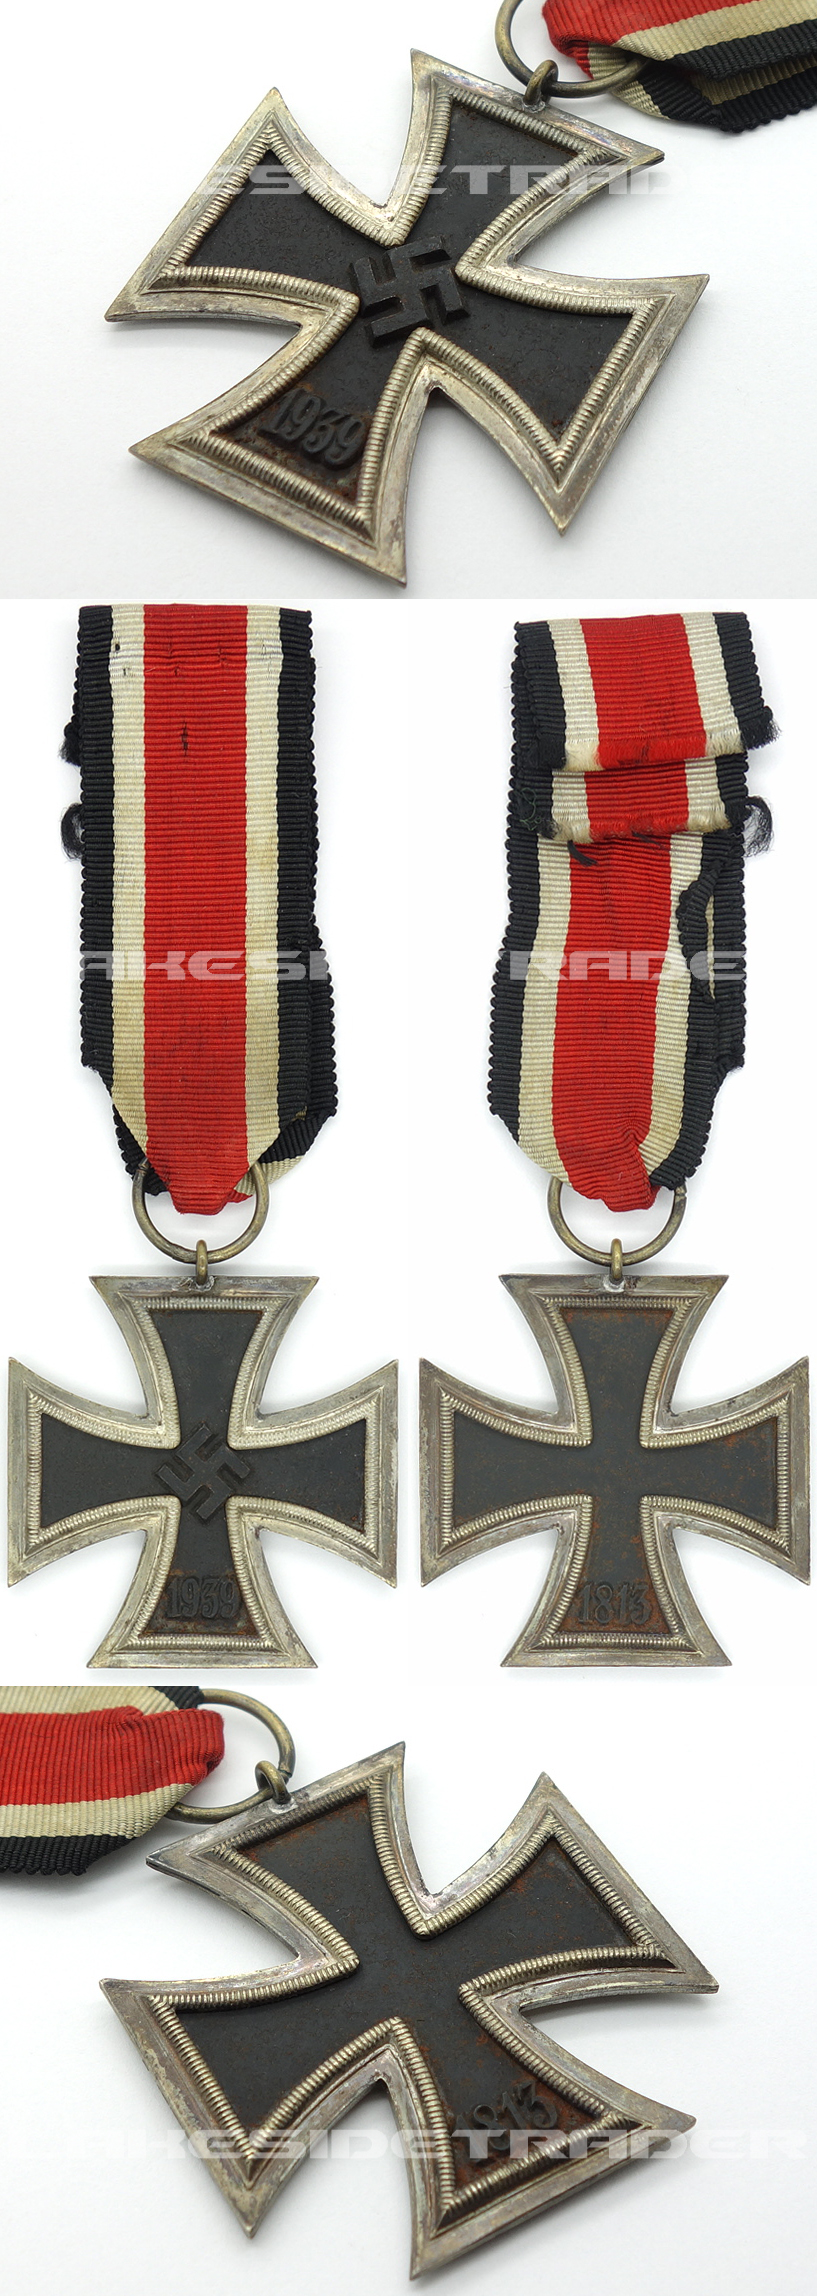 2nd Class Iron Cross 1939